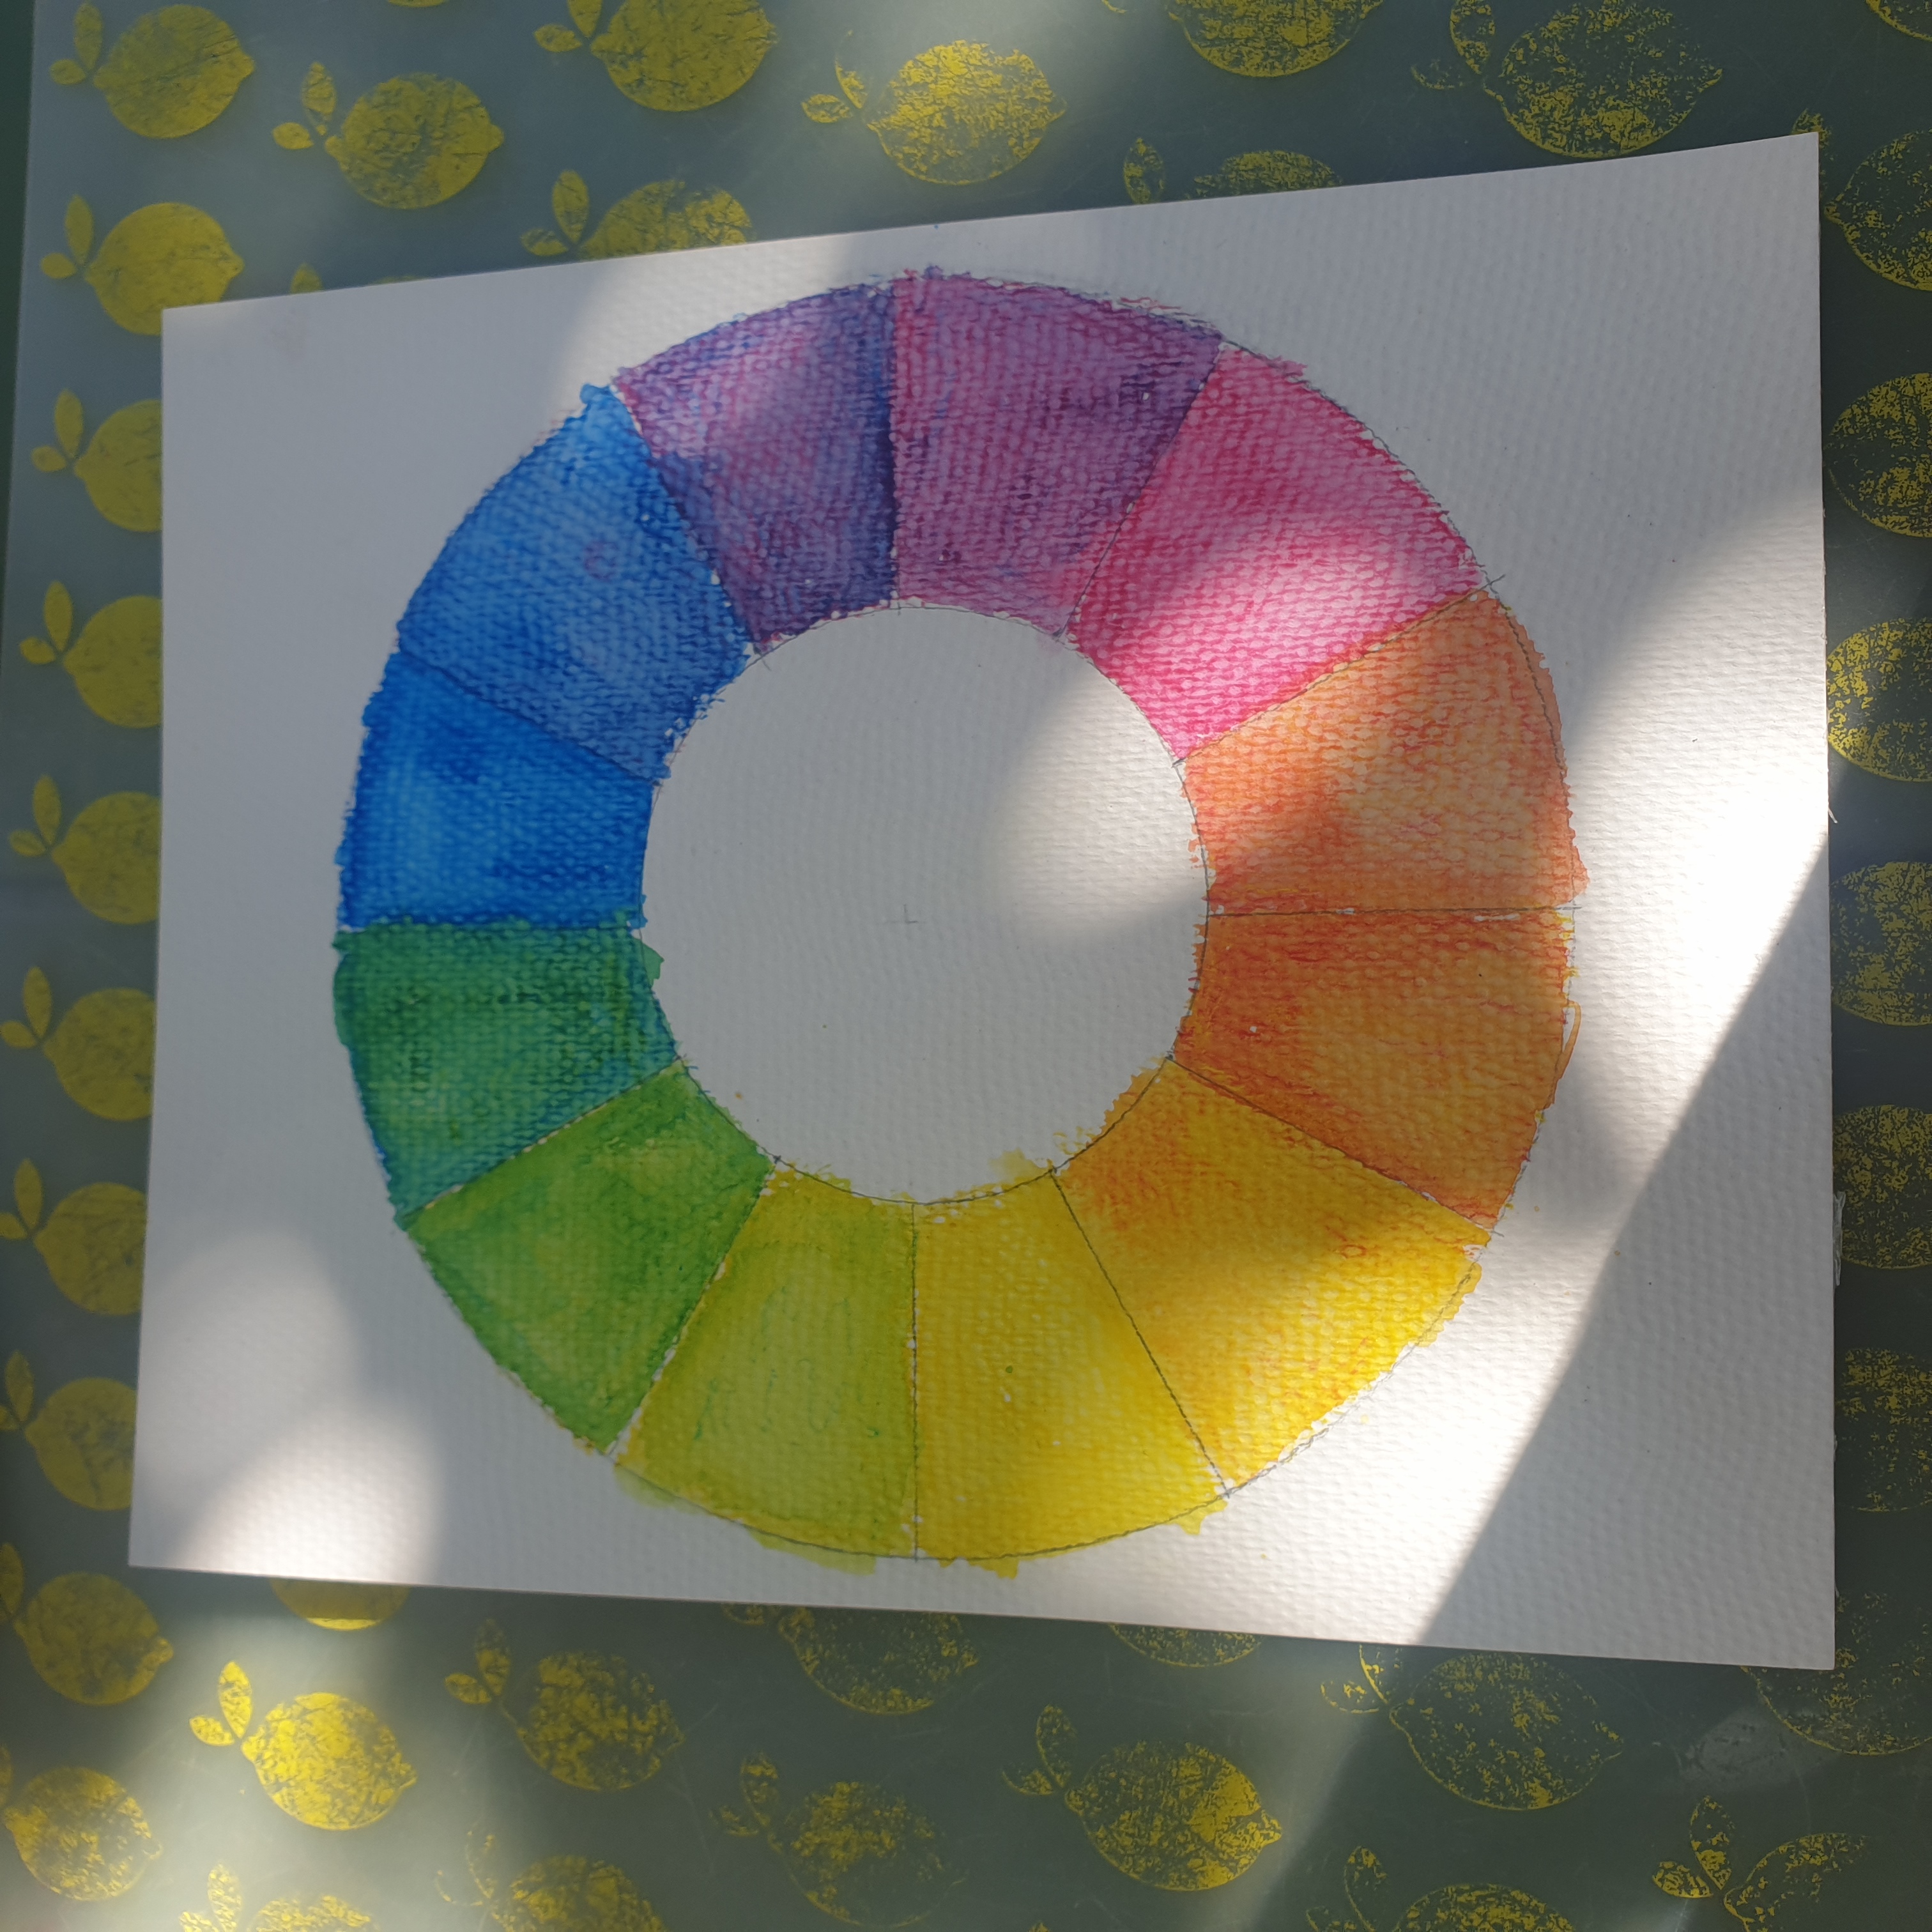 Met aquarel potloden kun je kinderen ook heel goed uitleggen hoe de kleurencirkel werkt. Een kleurencirkel laat zien hoe je van de drie primaire kleuren rood, geel en blauw de andere kleuren maakt. 